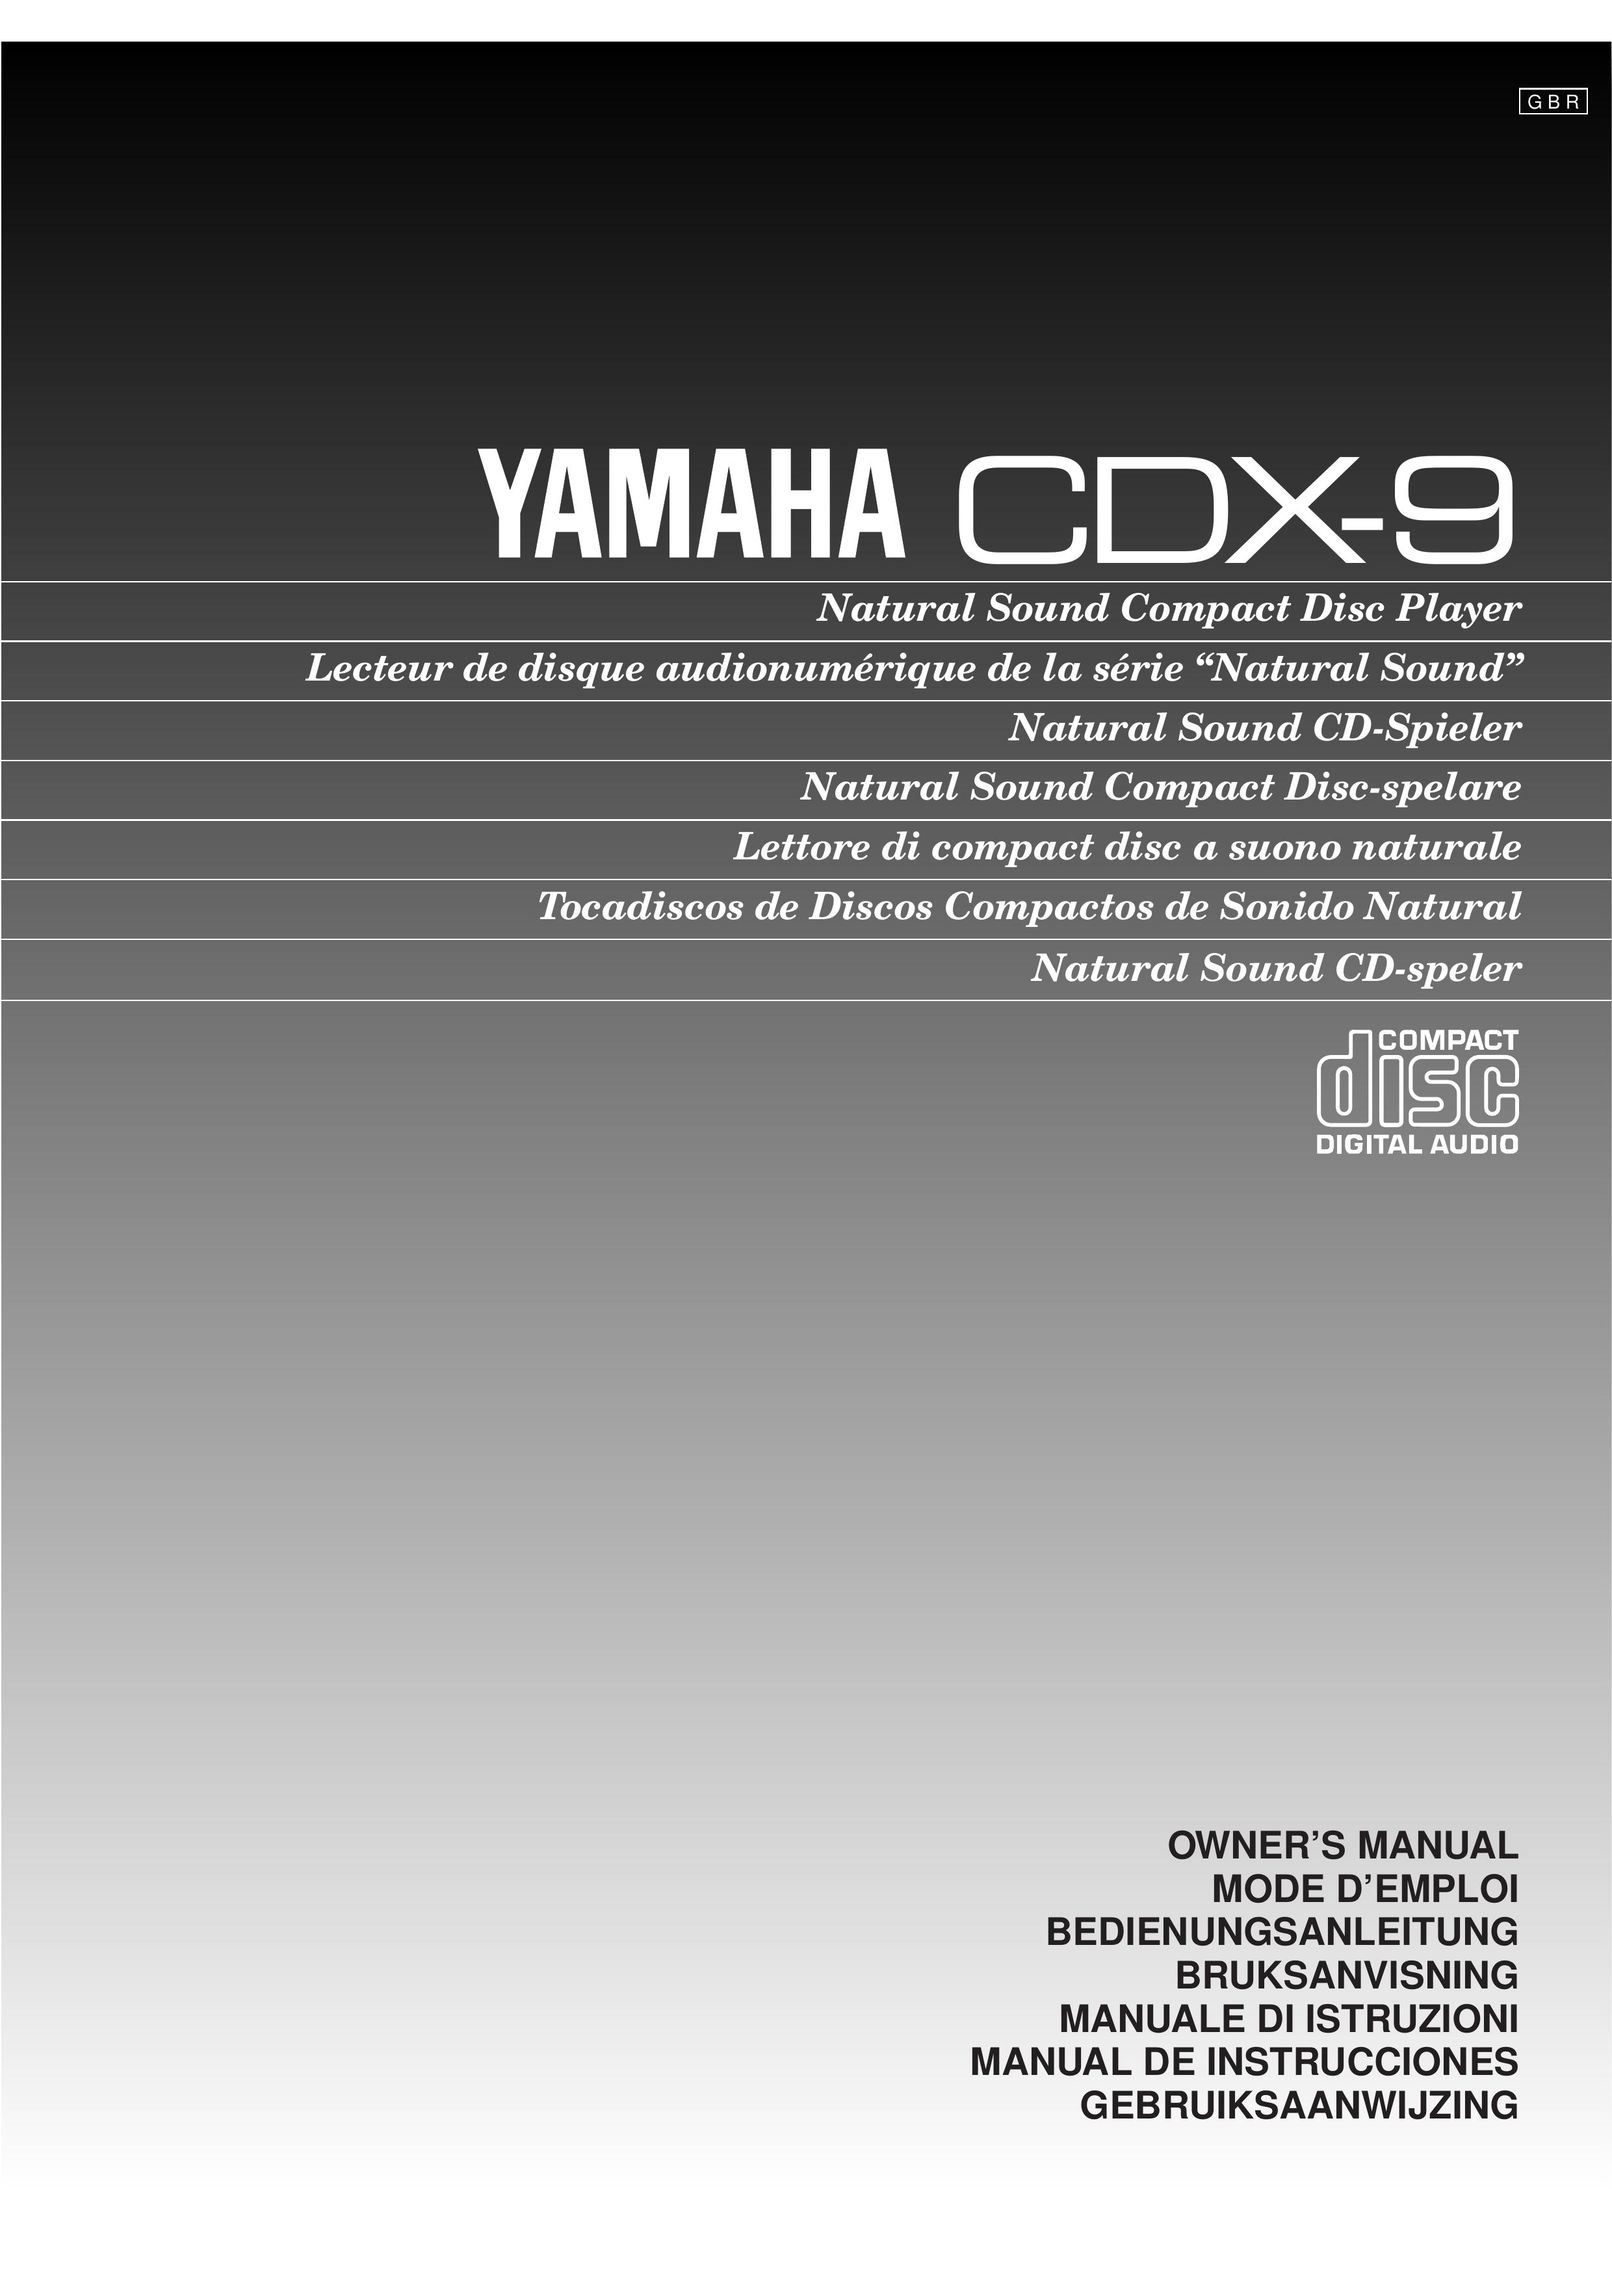 Yamaha CDX-9 CD Player User Manual